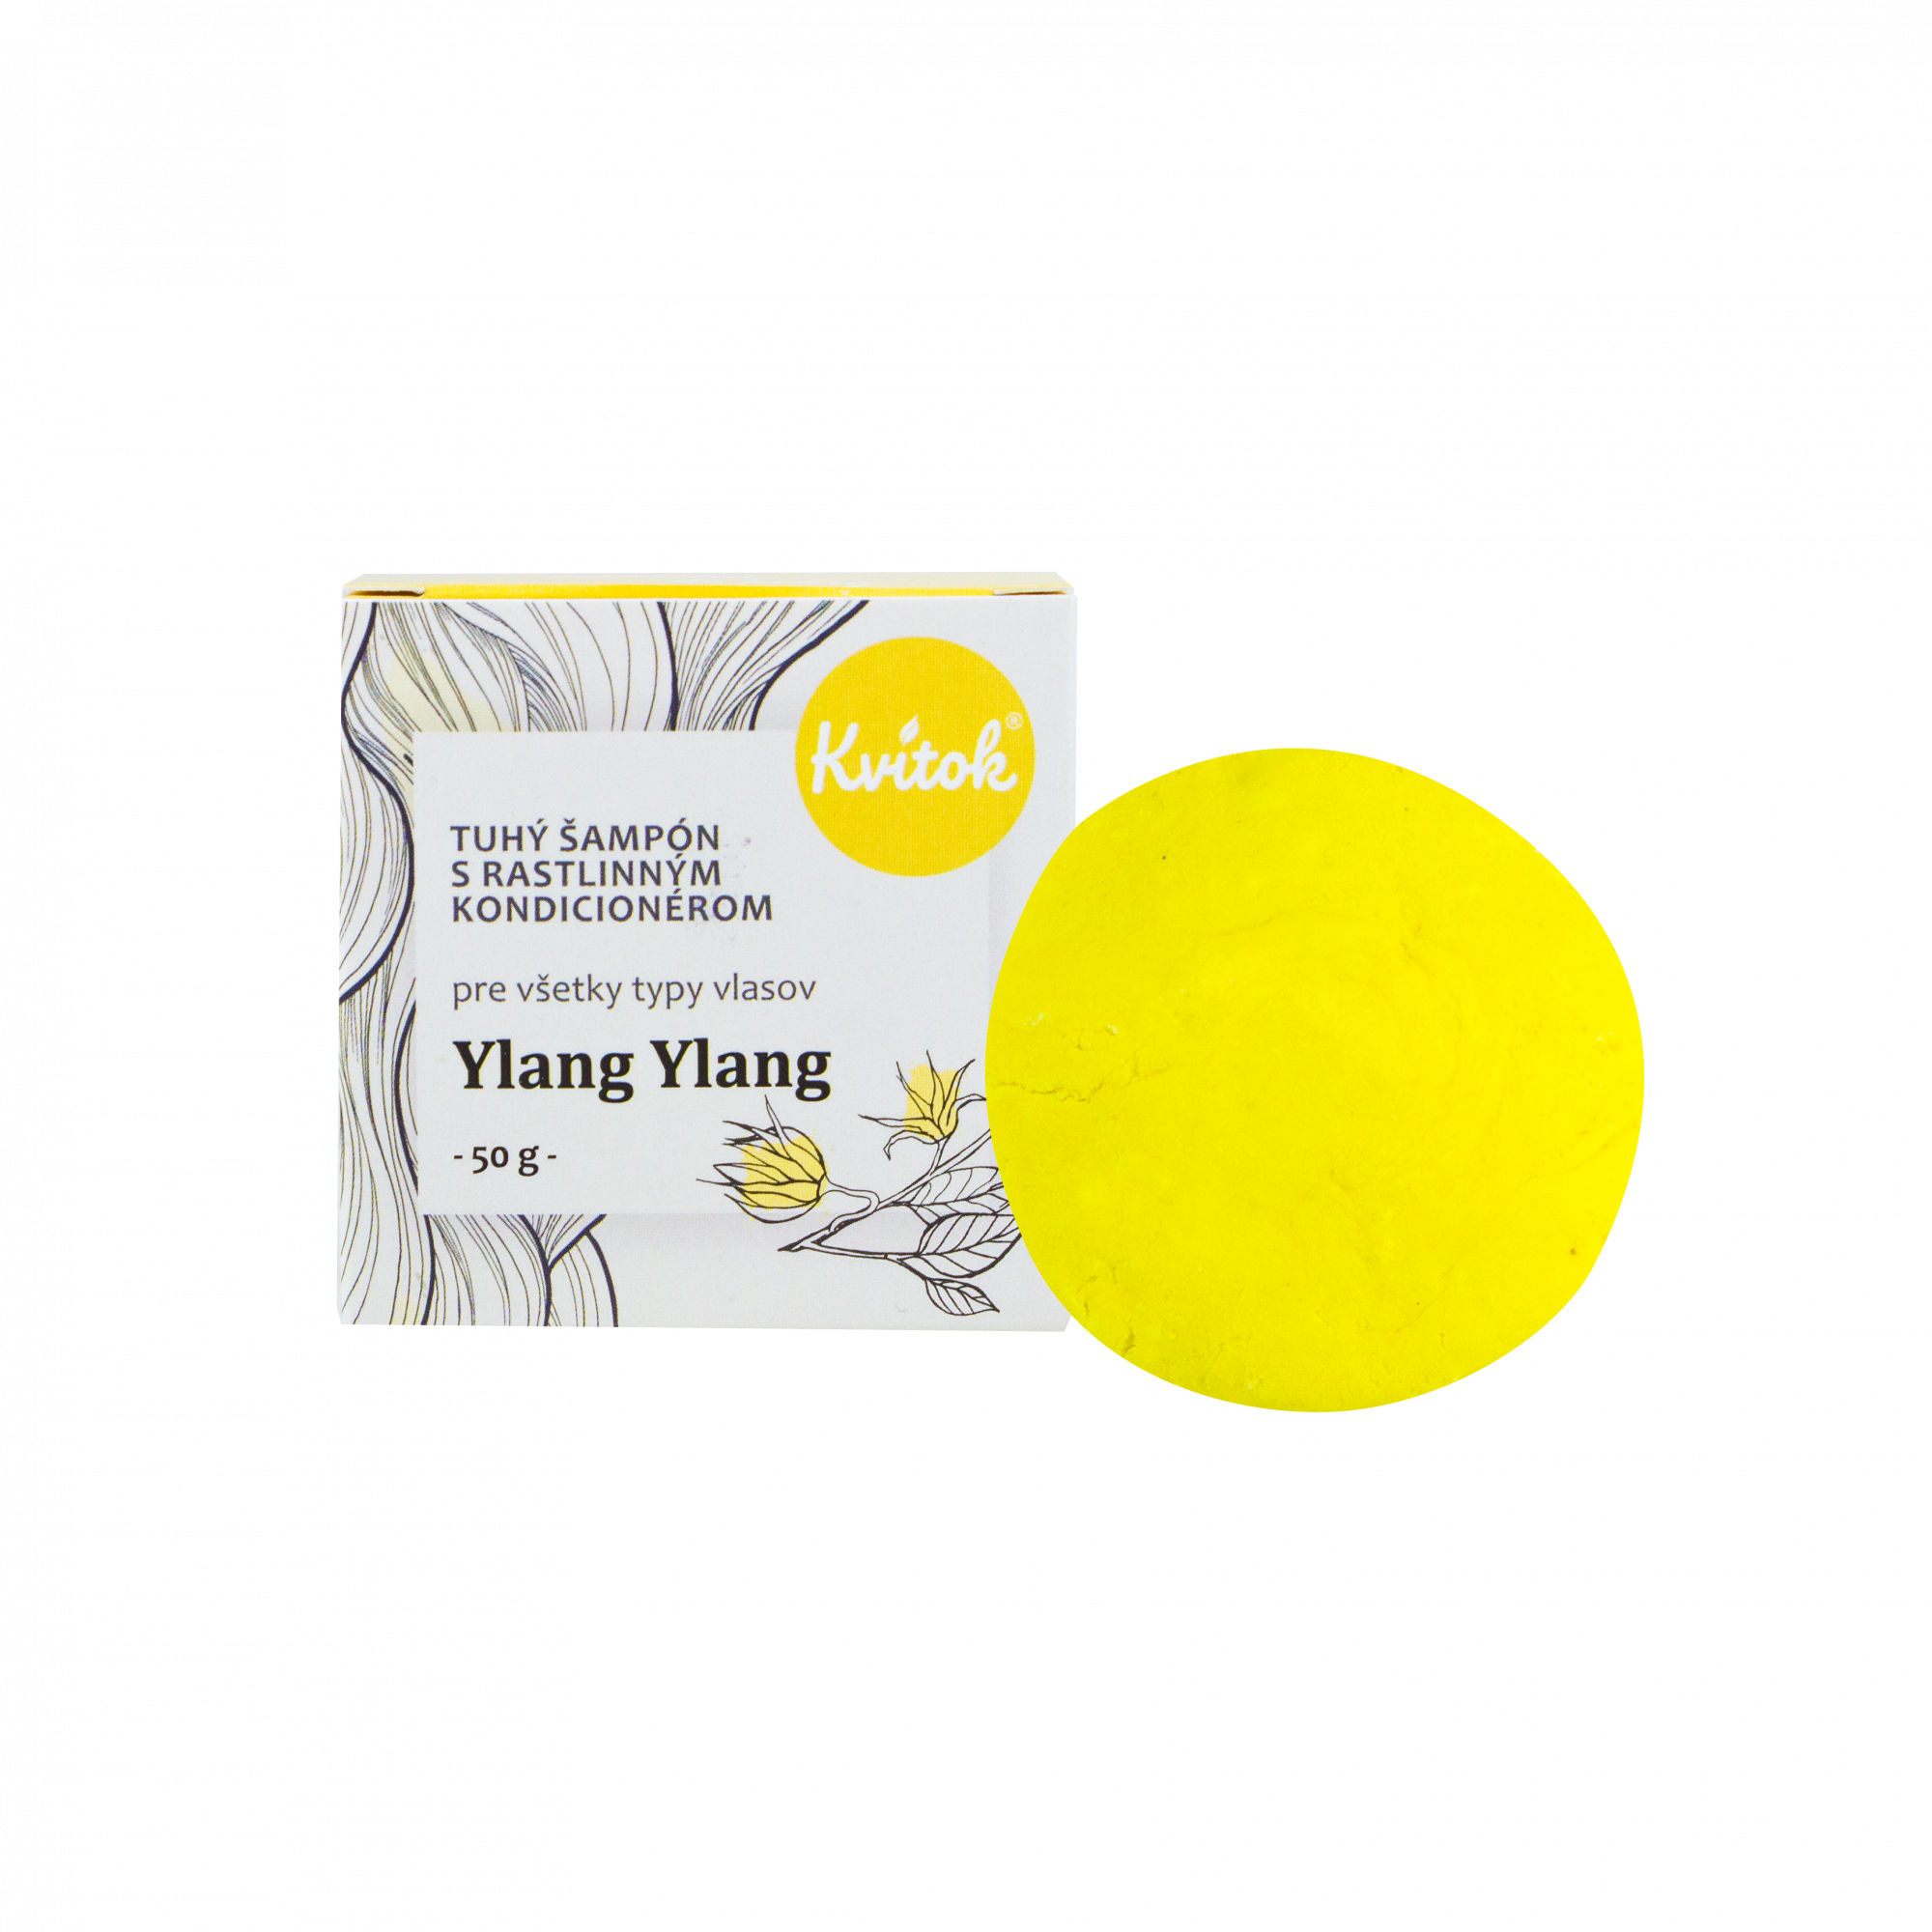 Kvitok Tuhý šampon s kondicionérem pro světlé vlasy Ylang Ylang 50 g - krásně pění Kvitok